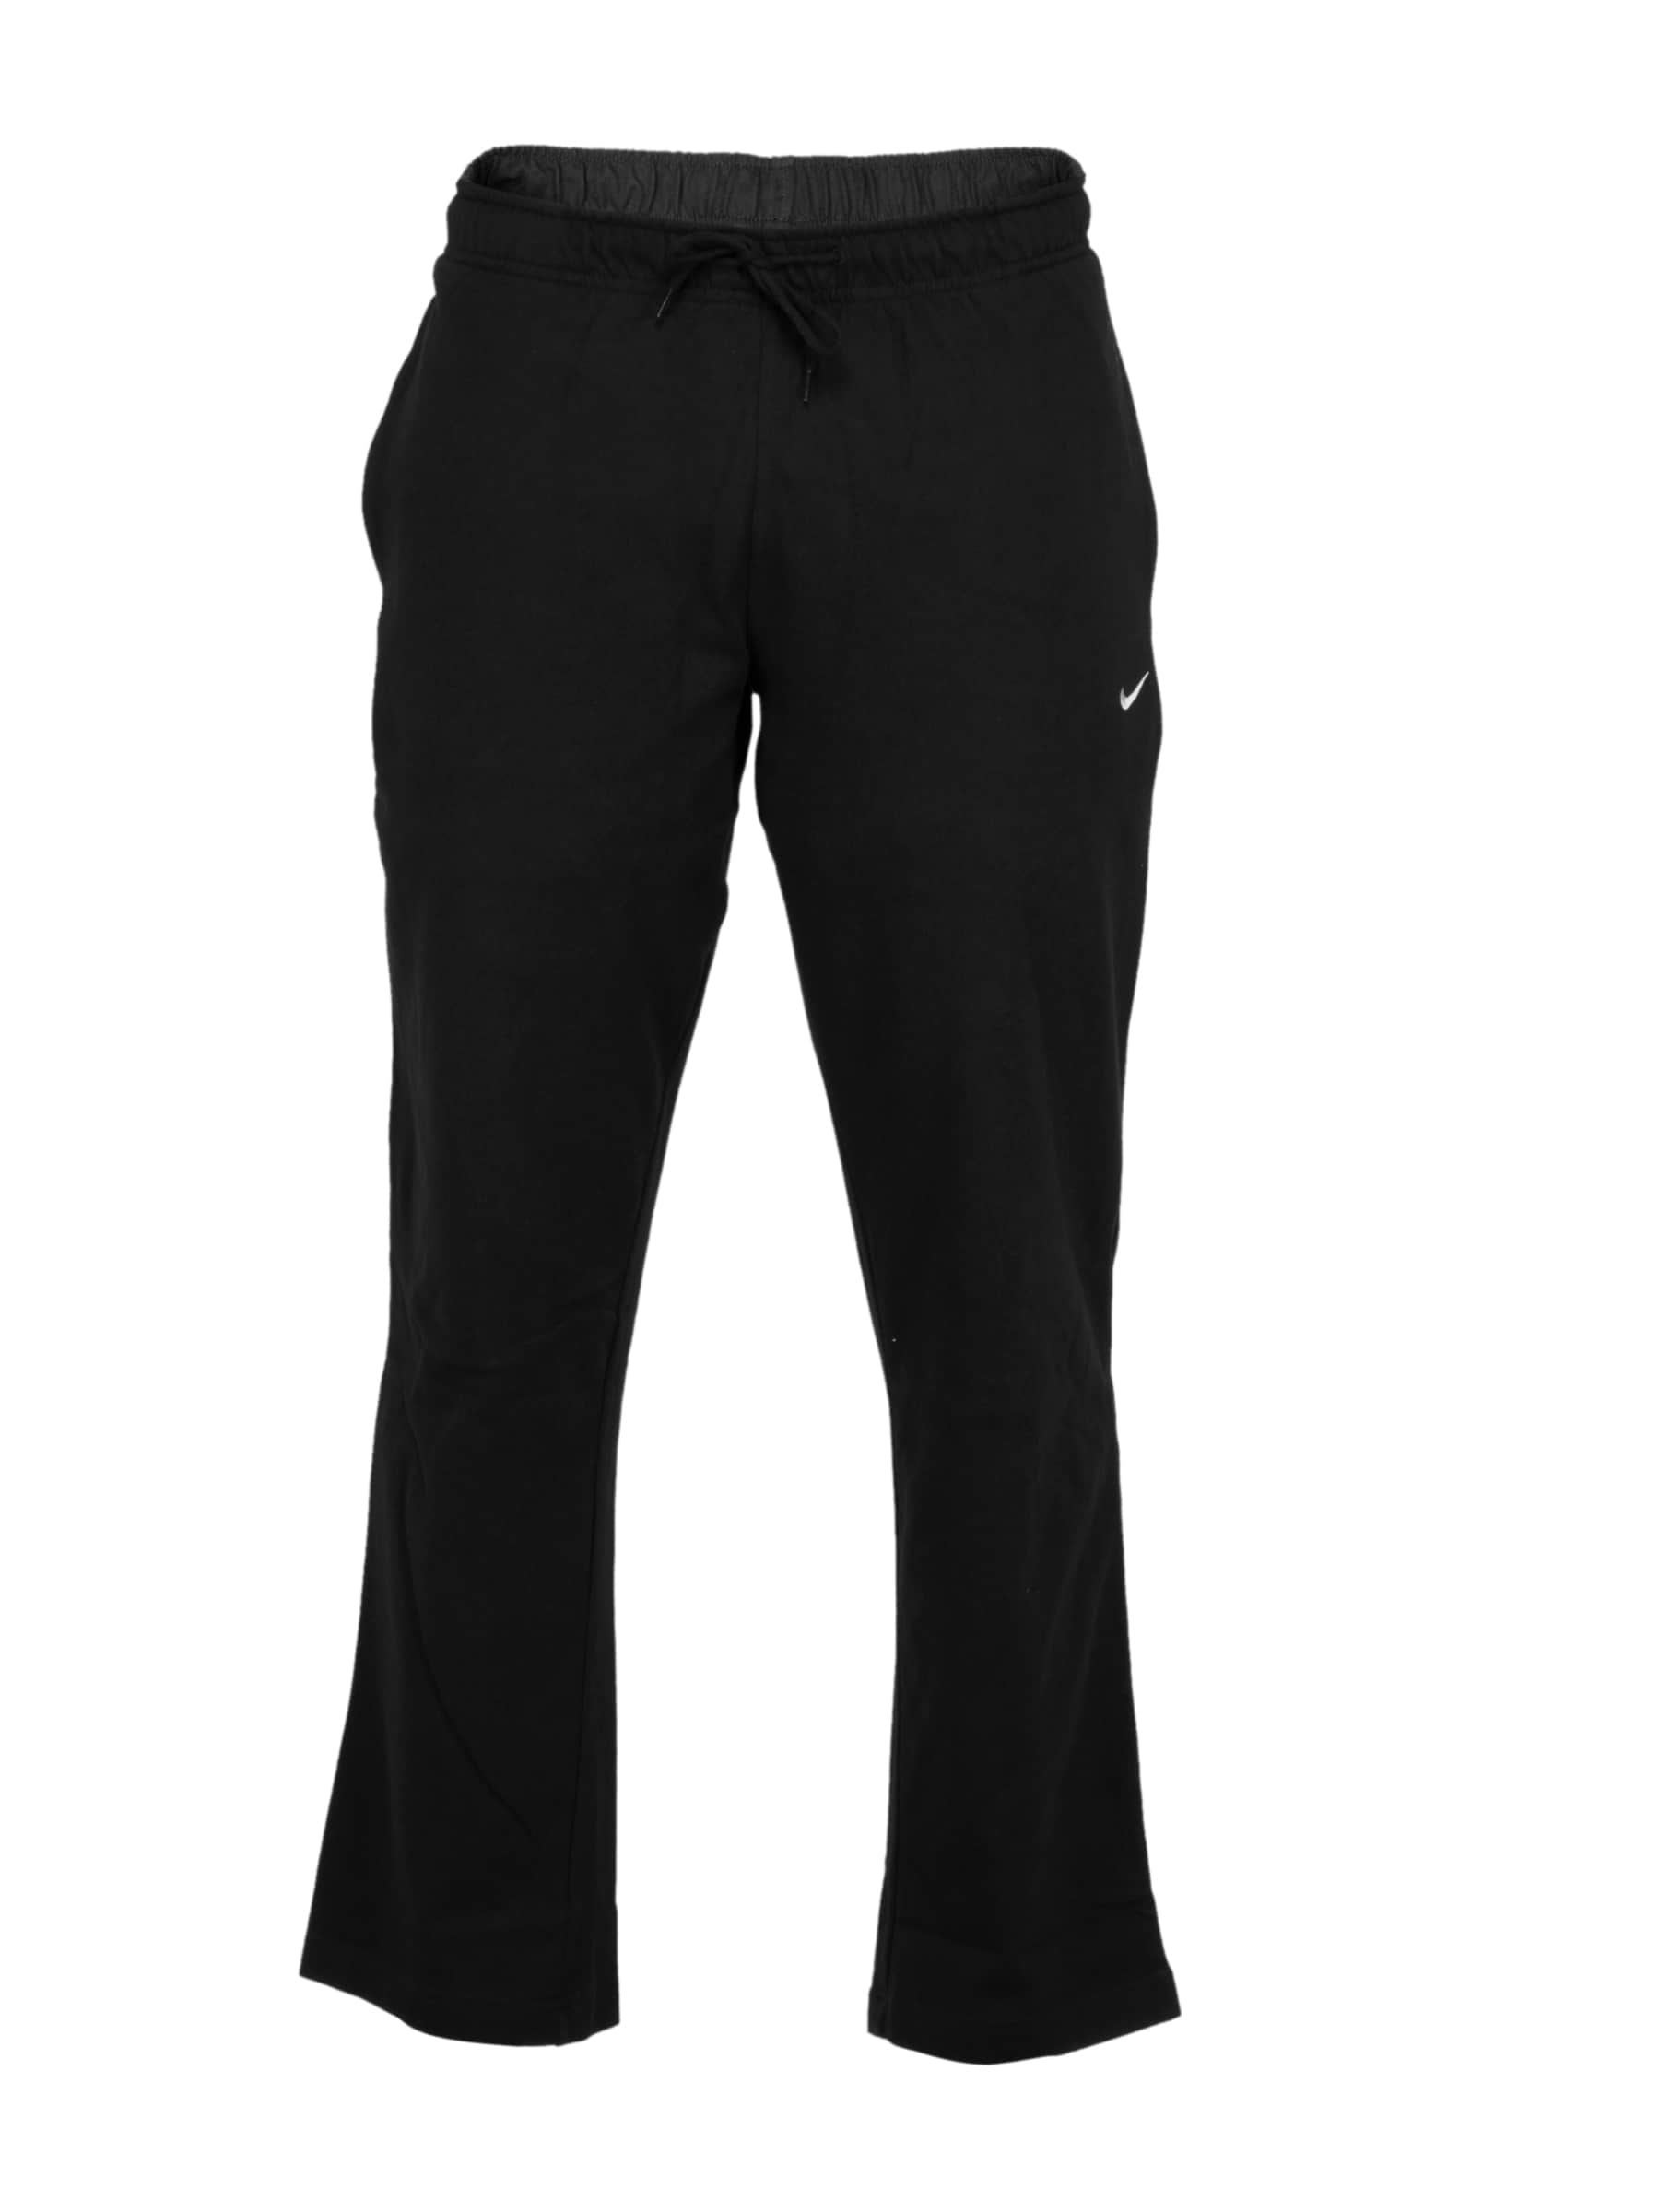 Nike Black Dri-fit Cotton     Cricket  Track Pants